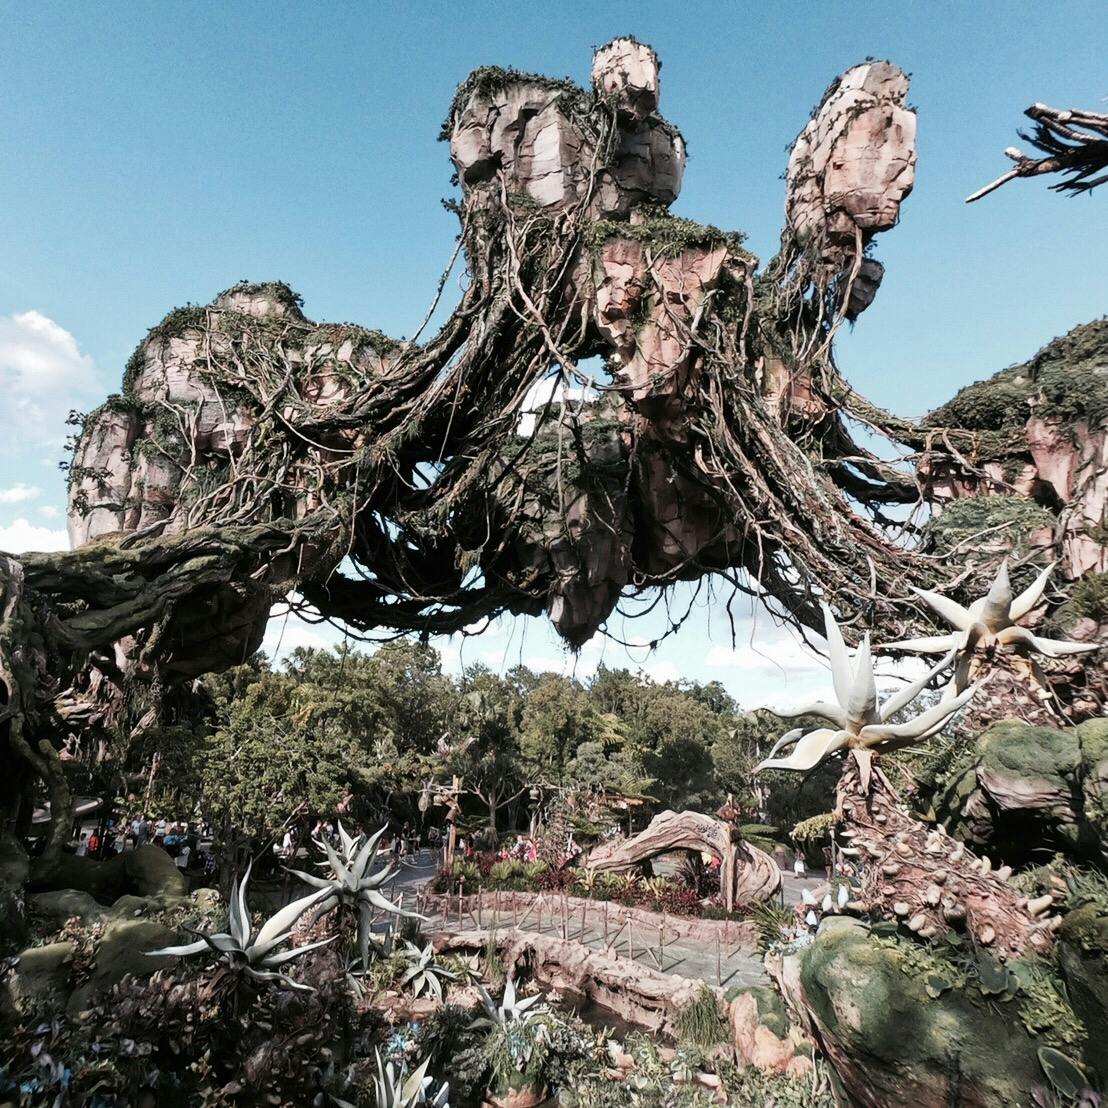 ディズニー アニマルキングダム Disney S Animal Kingdom Theme Park の投稿写真 感想 みどころ Animal Kingdom アバターの世界を再現した トリップノート